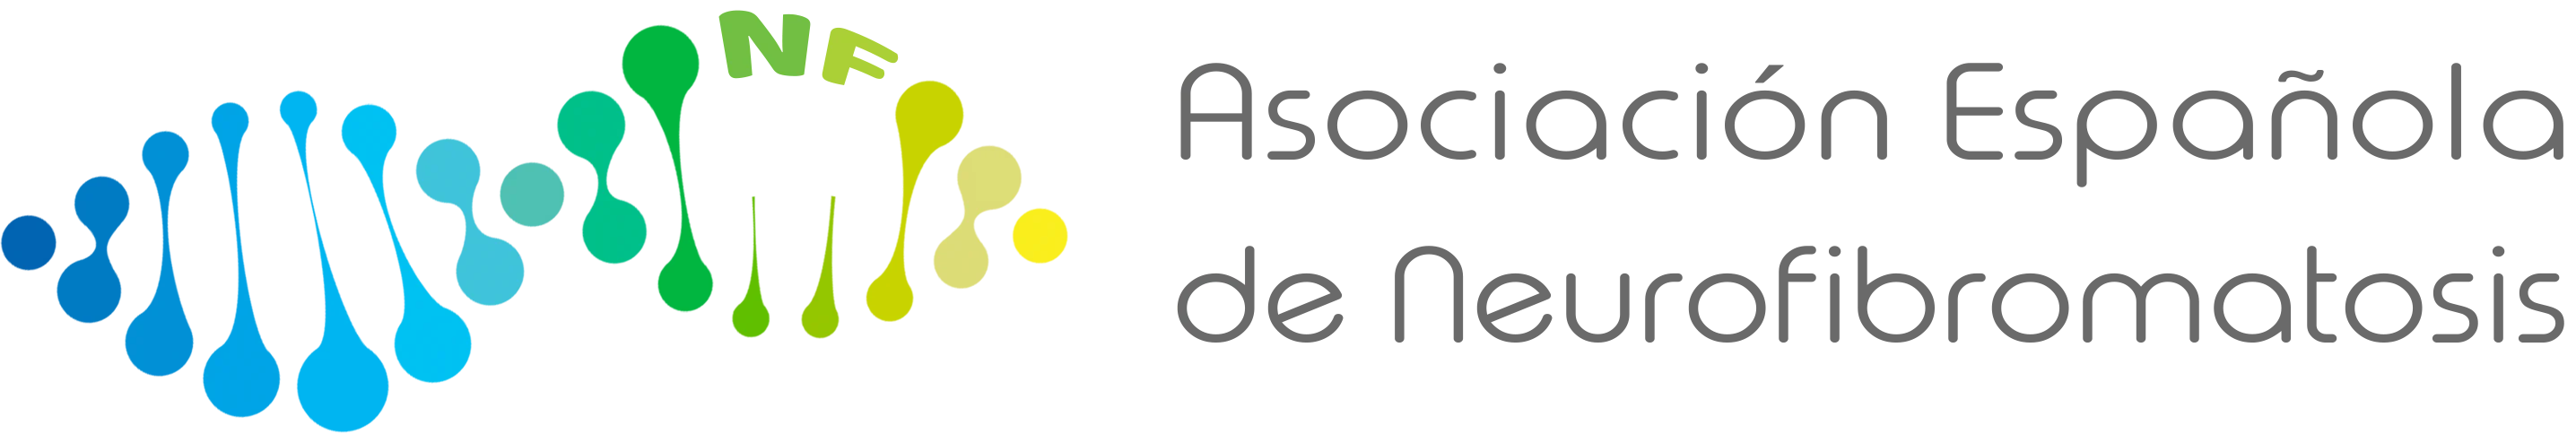 Asociación Española de Neurofibromatosis